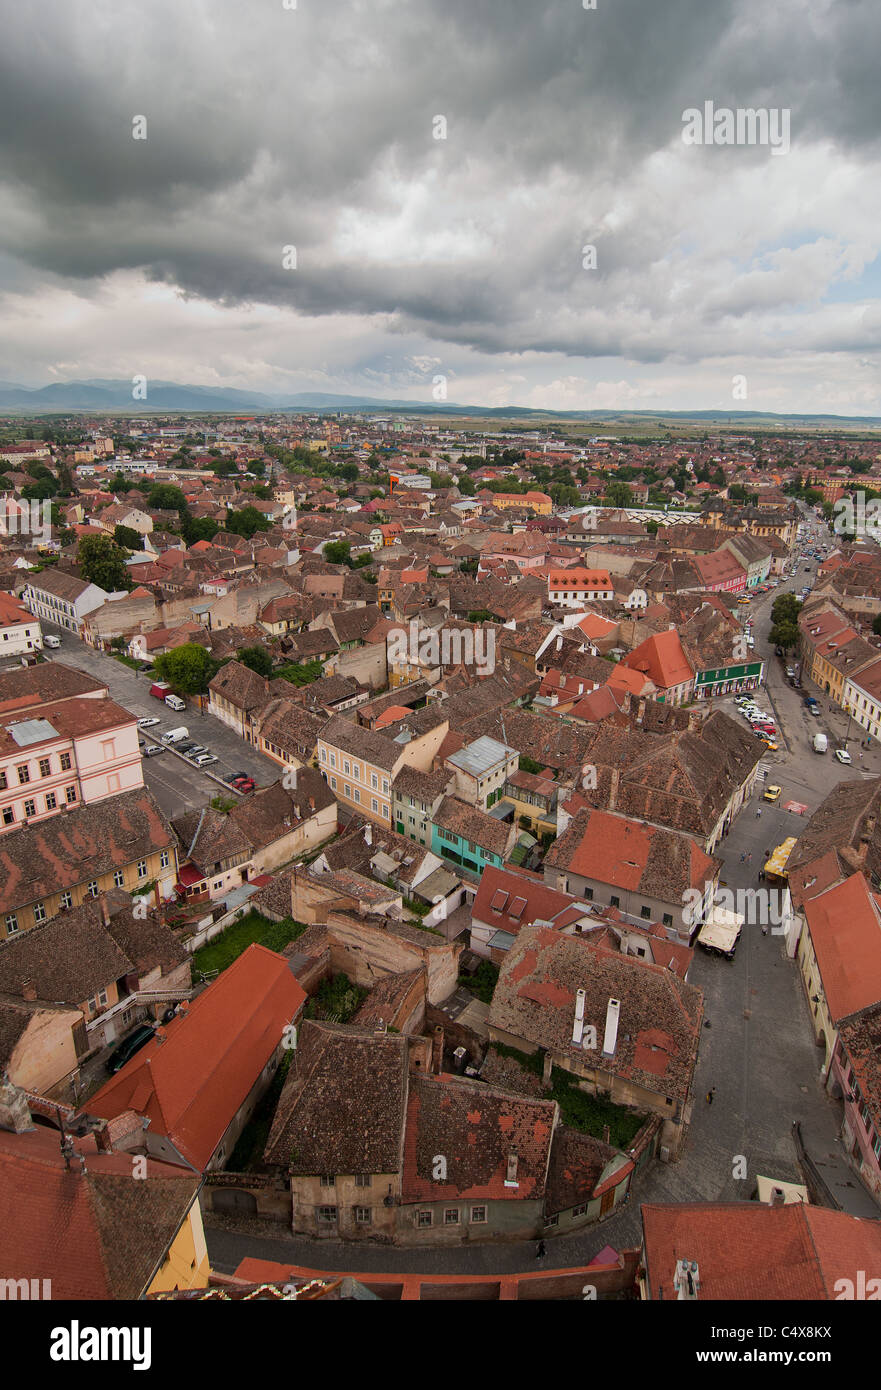 alte Stadt Hermannstadt Siebenbürgen Rumänien Luftbild aus der lutherischen Dom-Turm (Kleinseite - Orasul de jos) Bereich Stockfoto